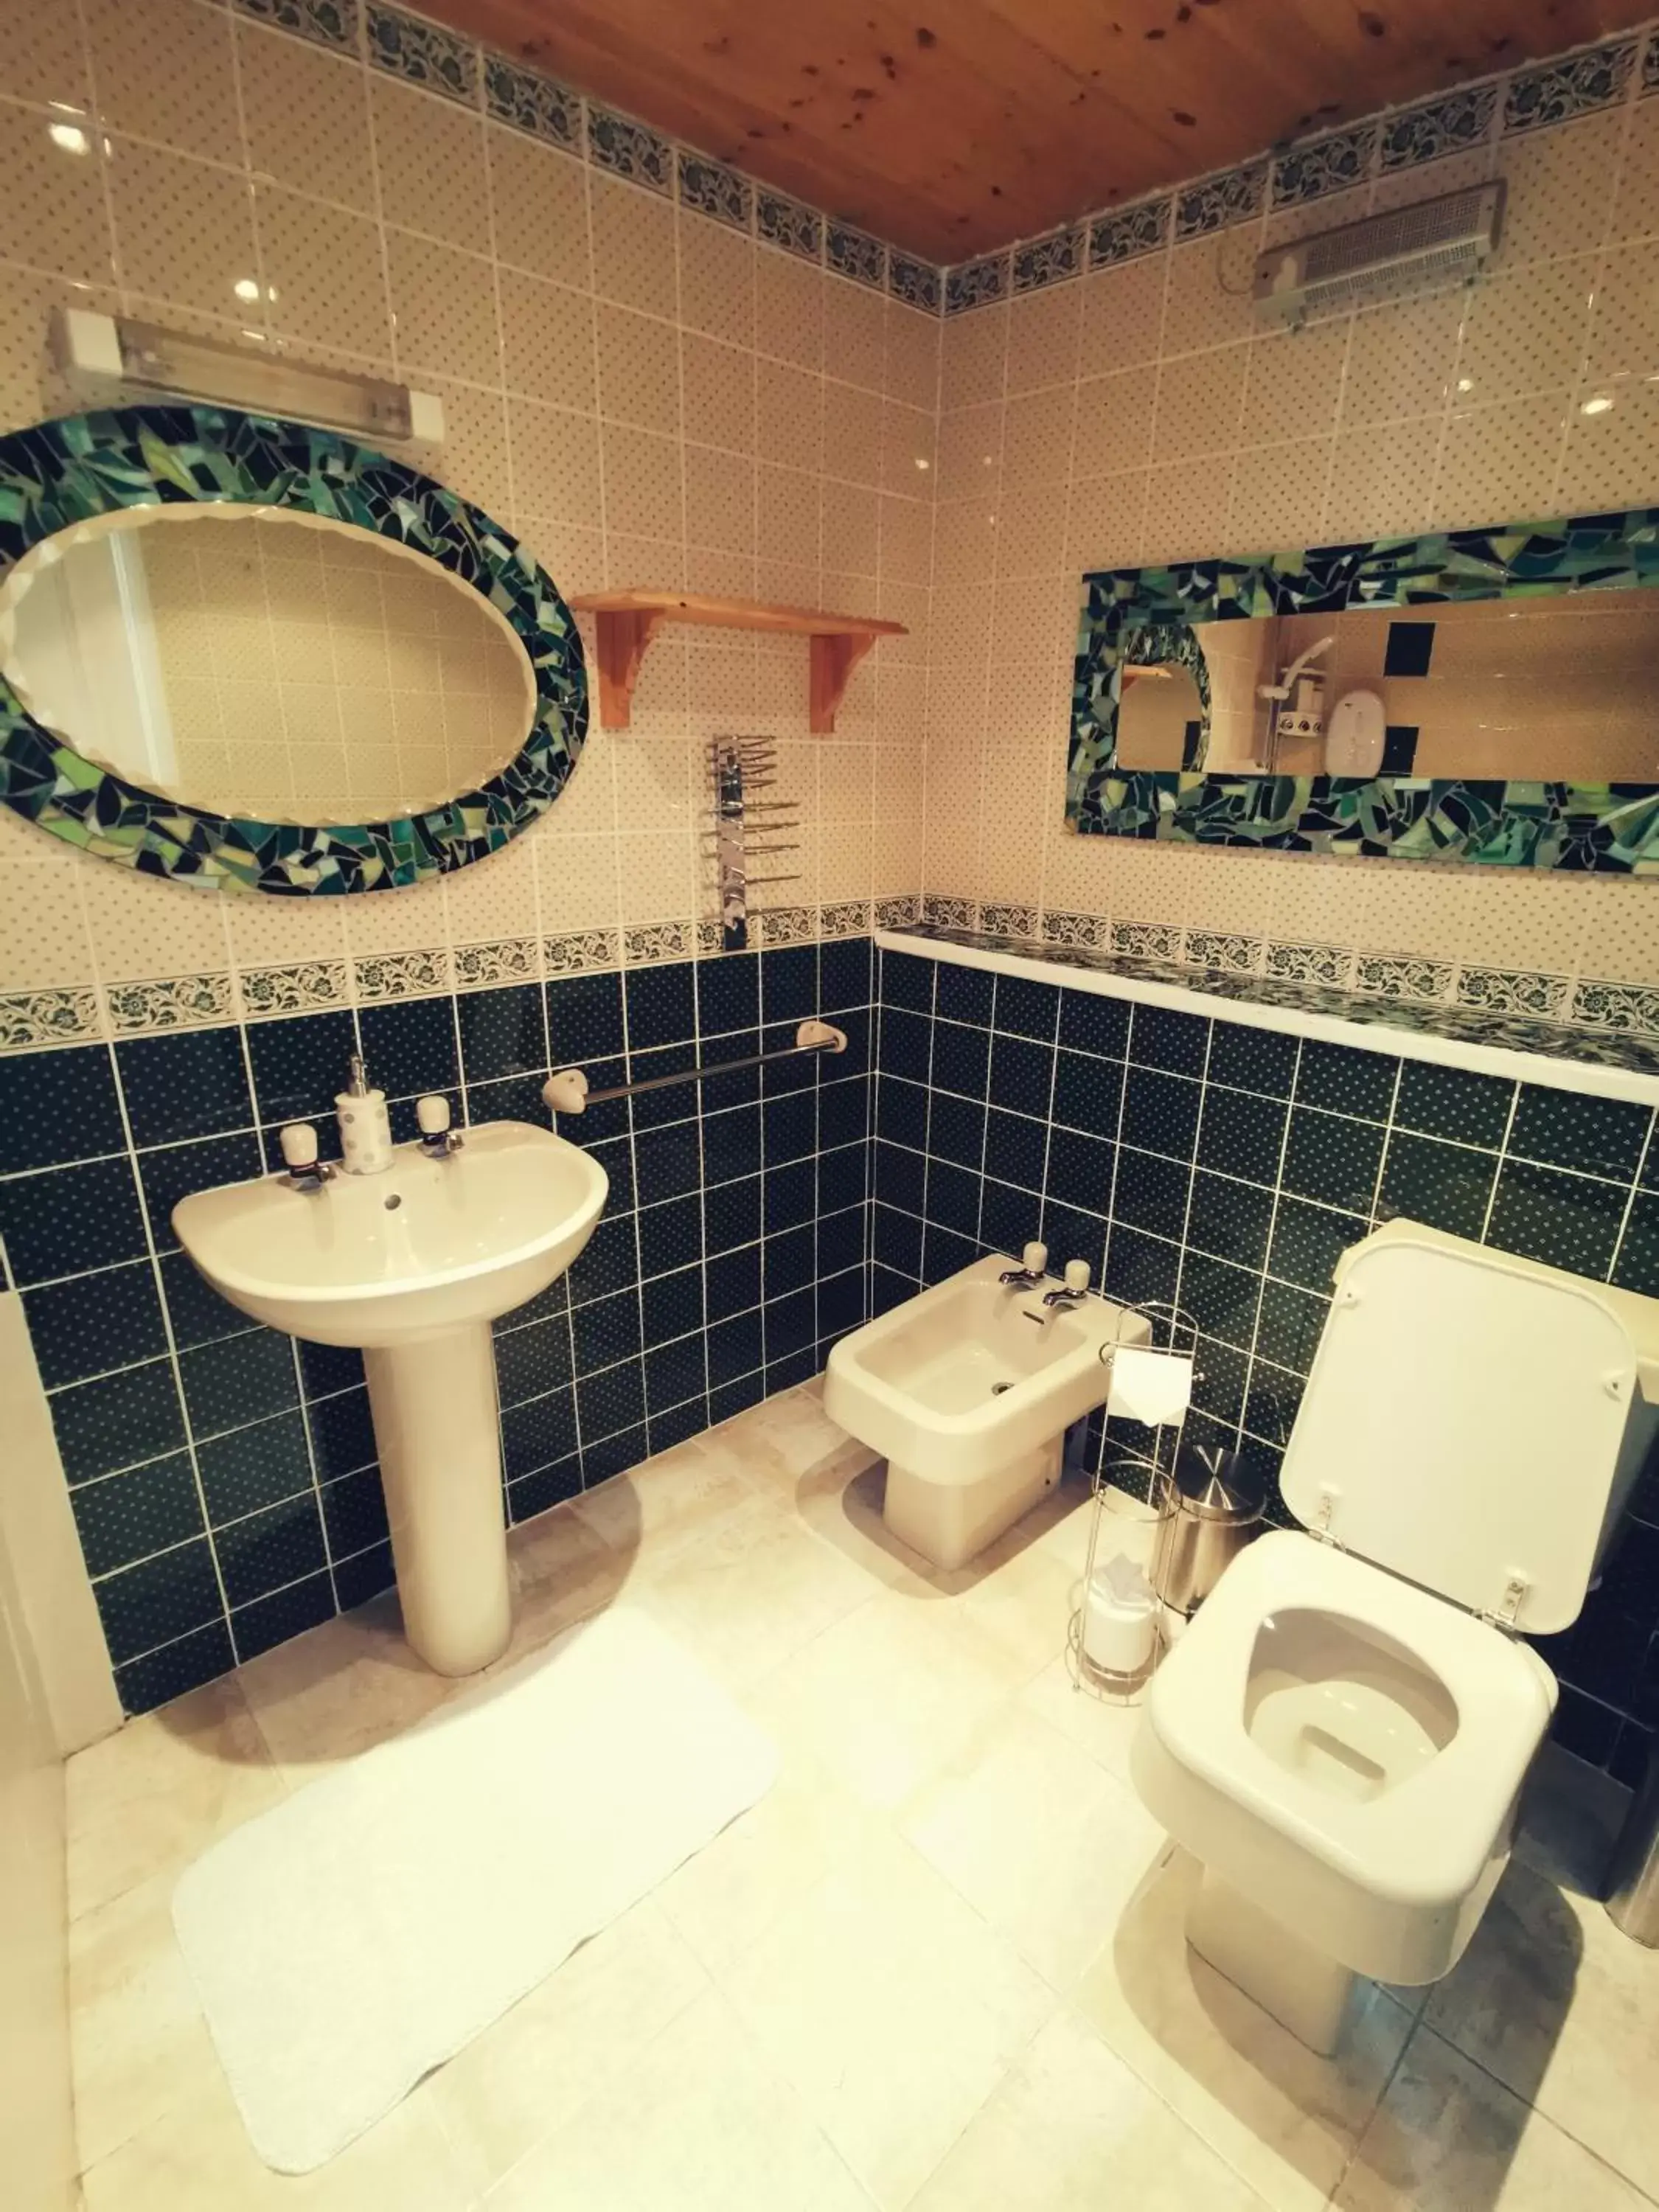 Bathroom in Victoria Hotel